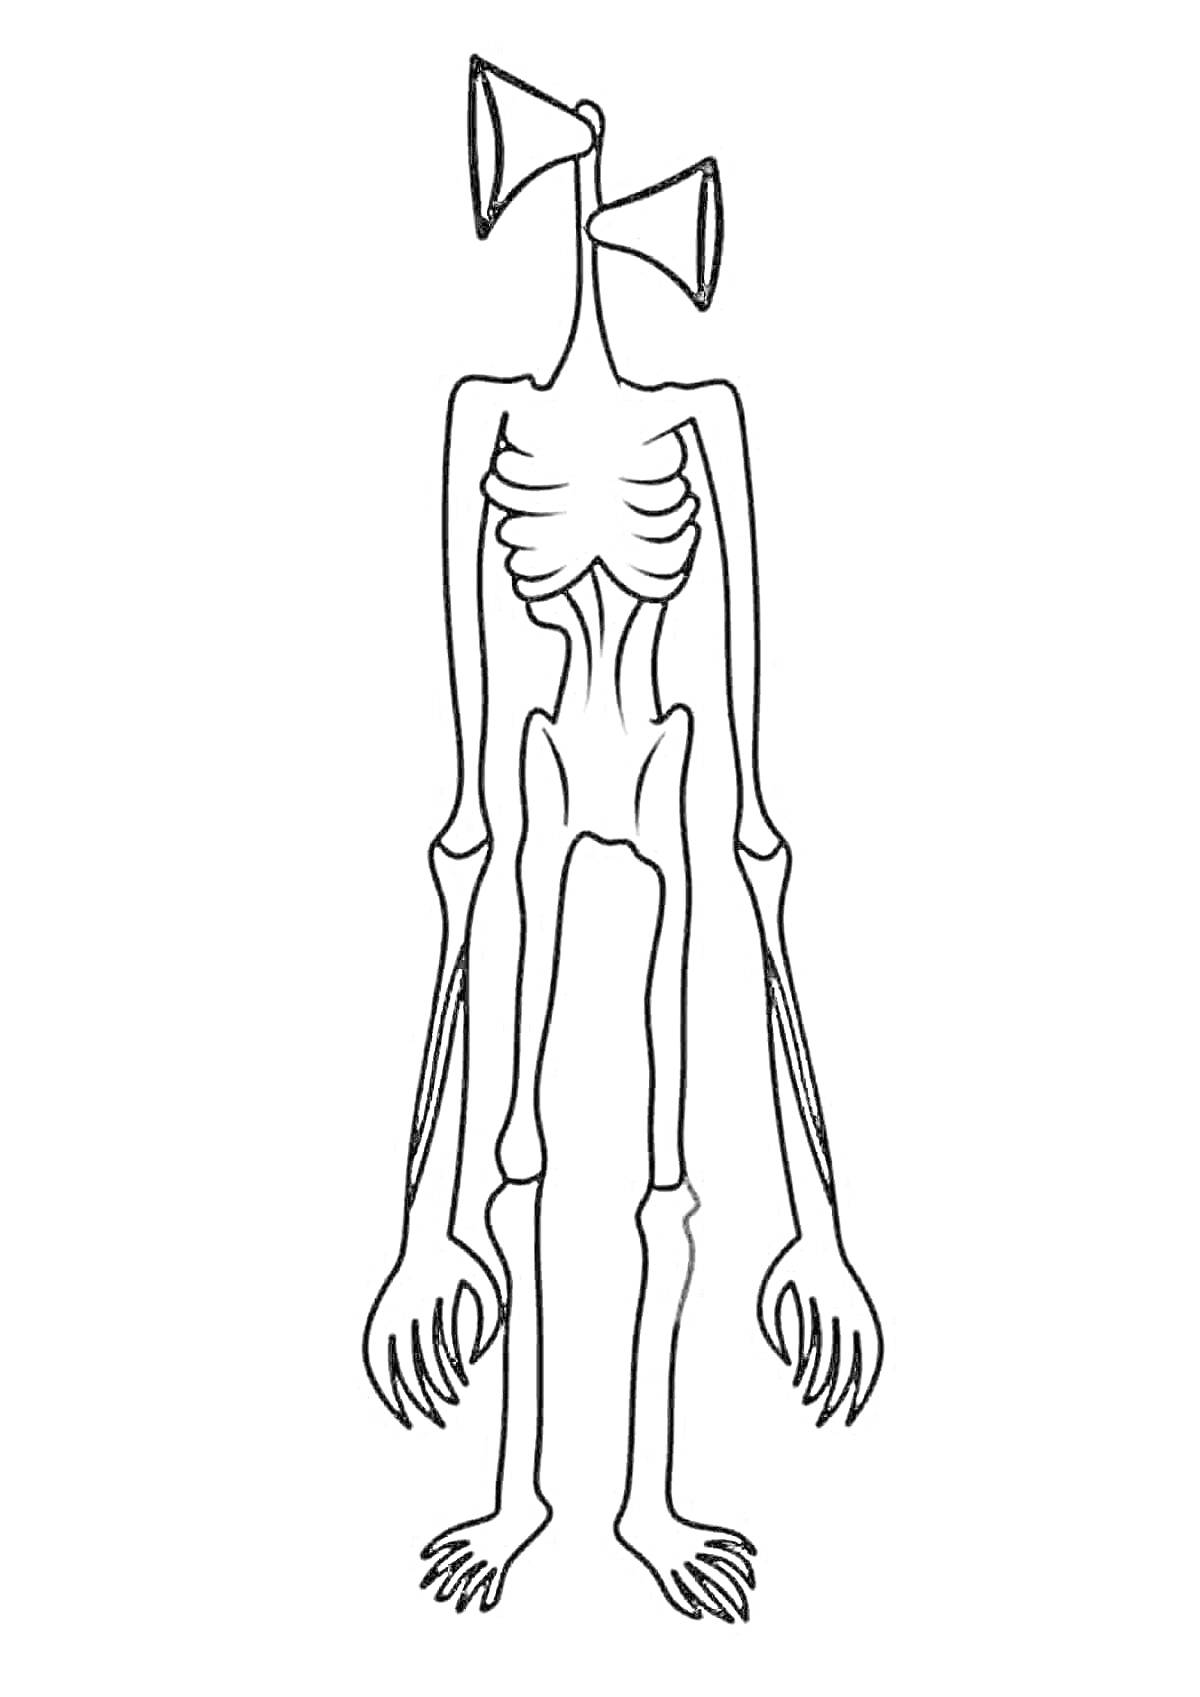 Чёрно-белая раскраска Сиреноголового с сиренами вместо головы, туловищем, длинными руками, ребрами и когтистыми ногами